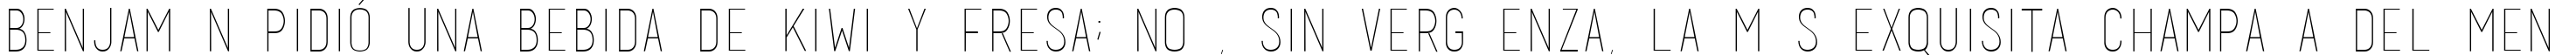 Пример написания шрифтом basic title font текста на испанском